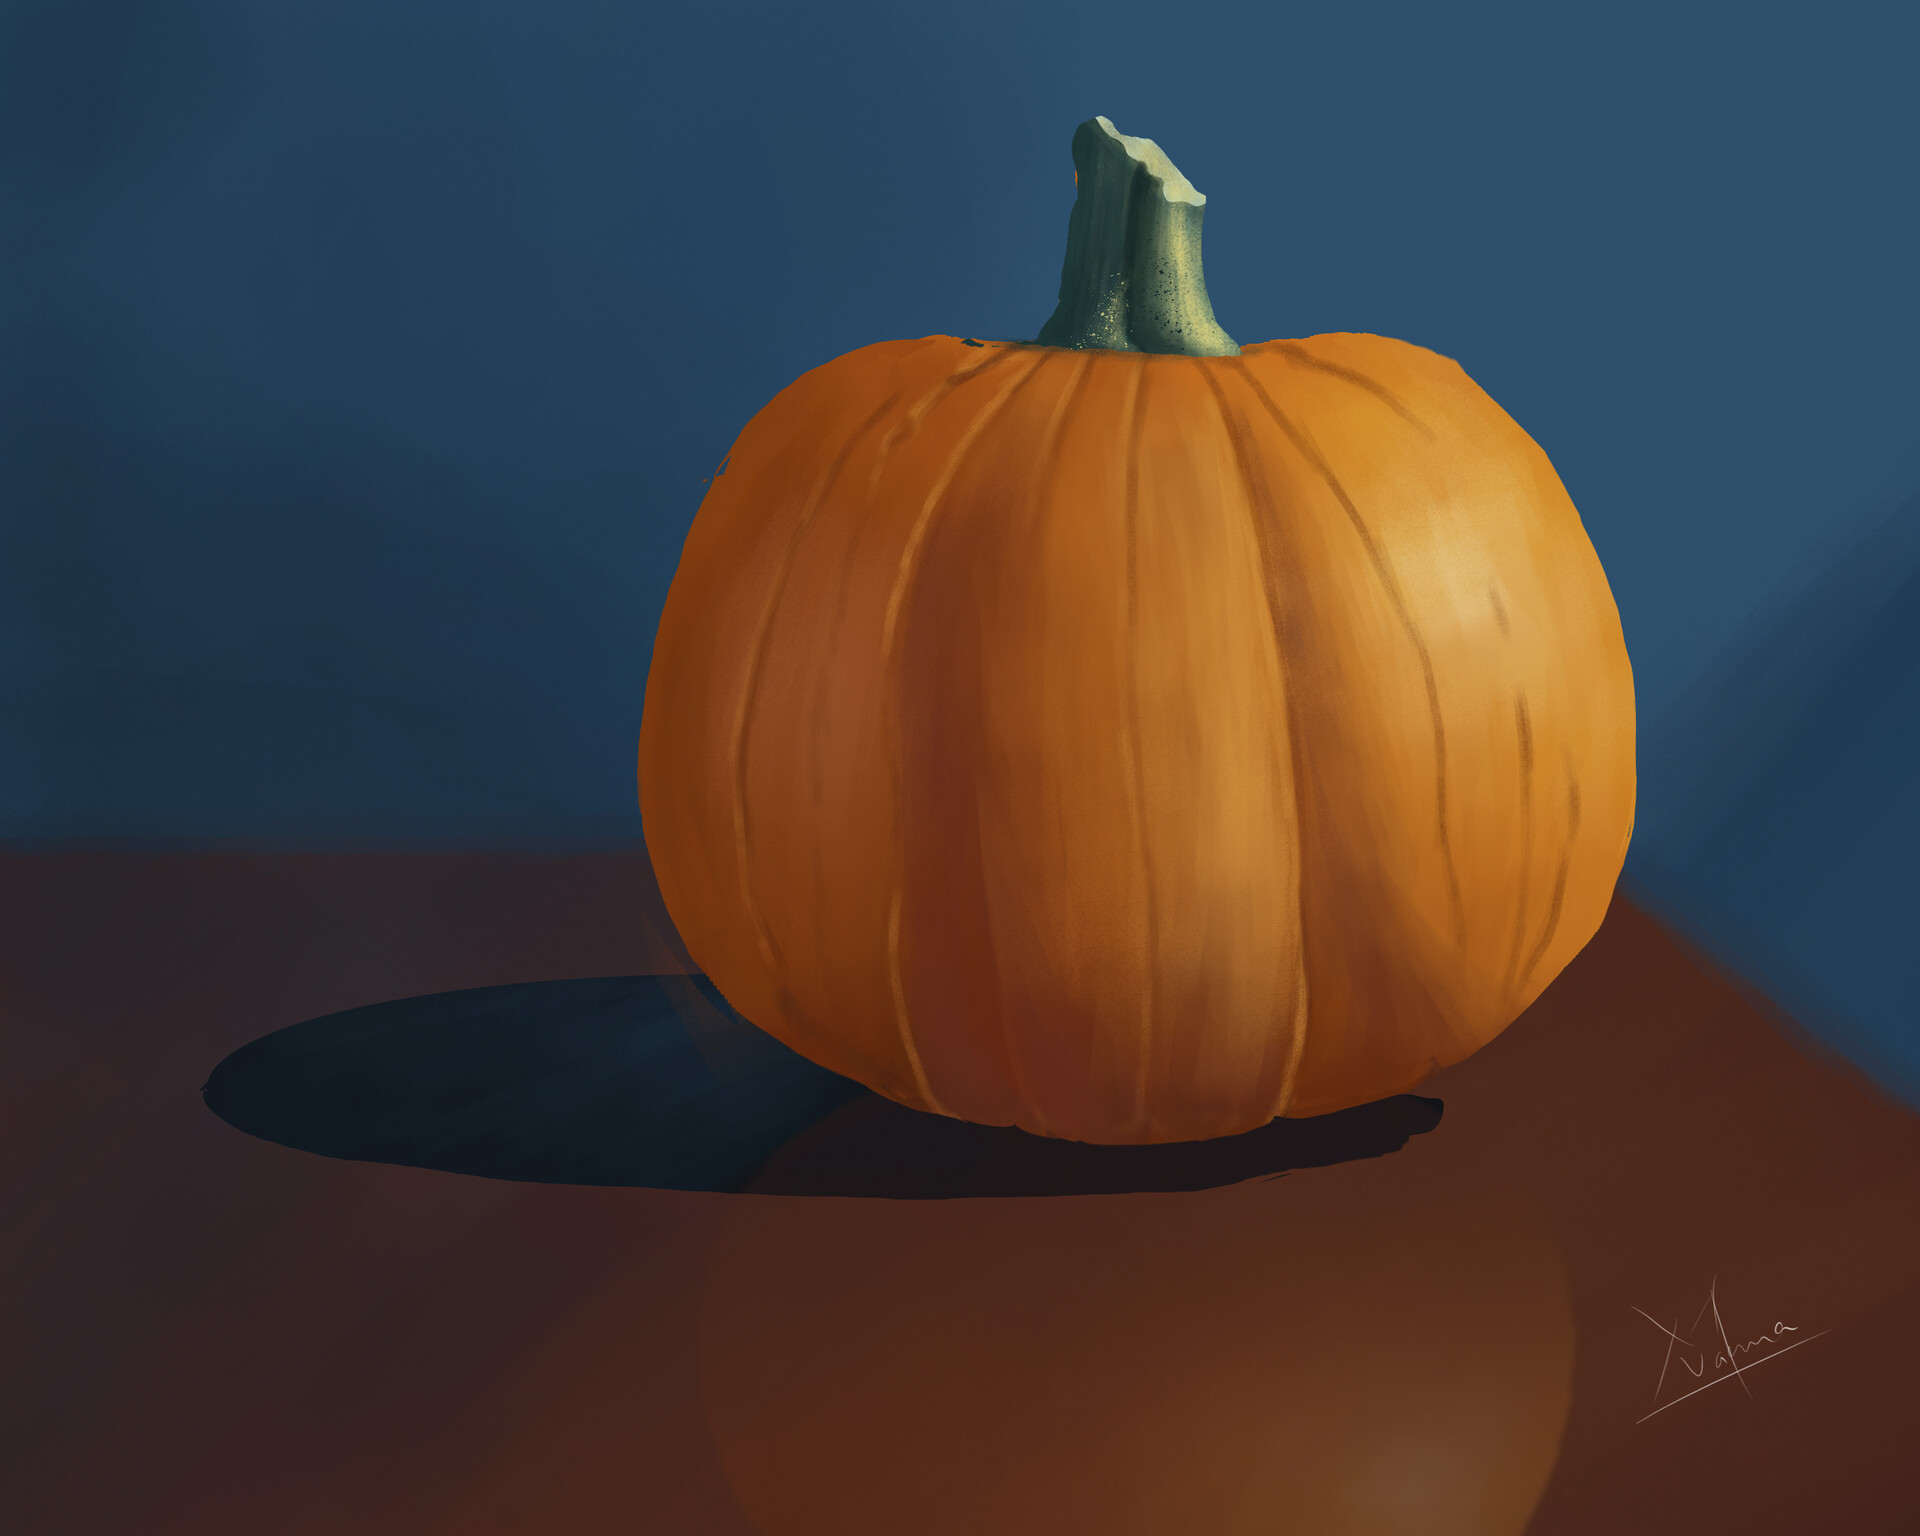 ArtStation - Color study of a pumpkin